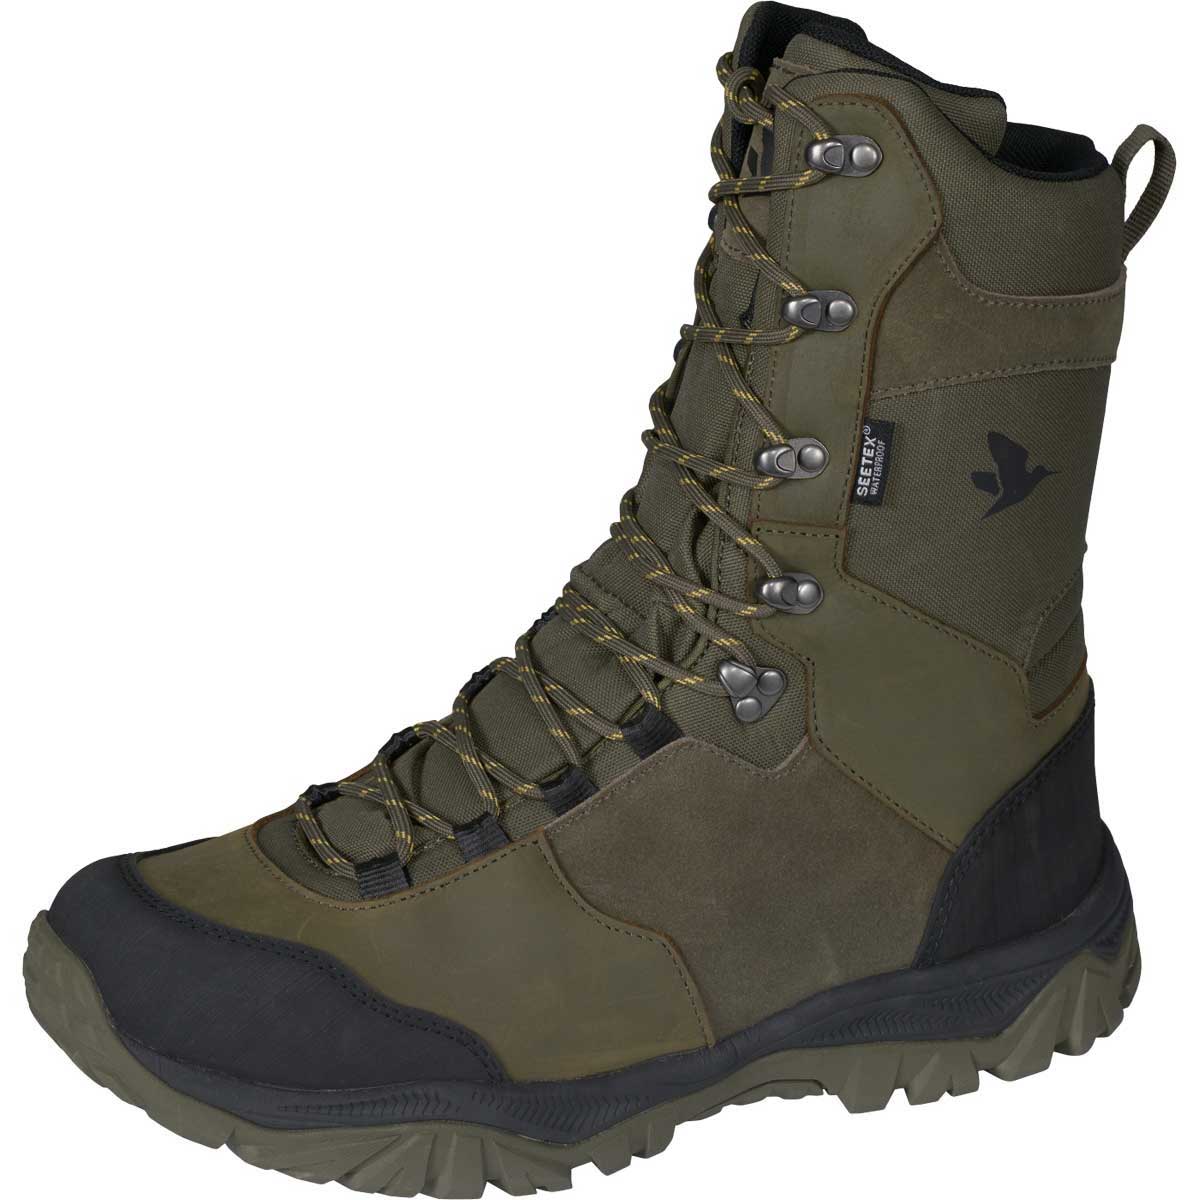 SEELAND Boots - Mens Hawker High - Green